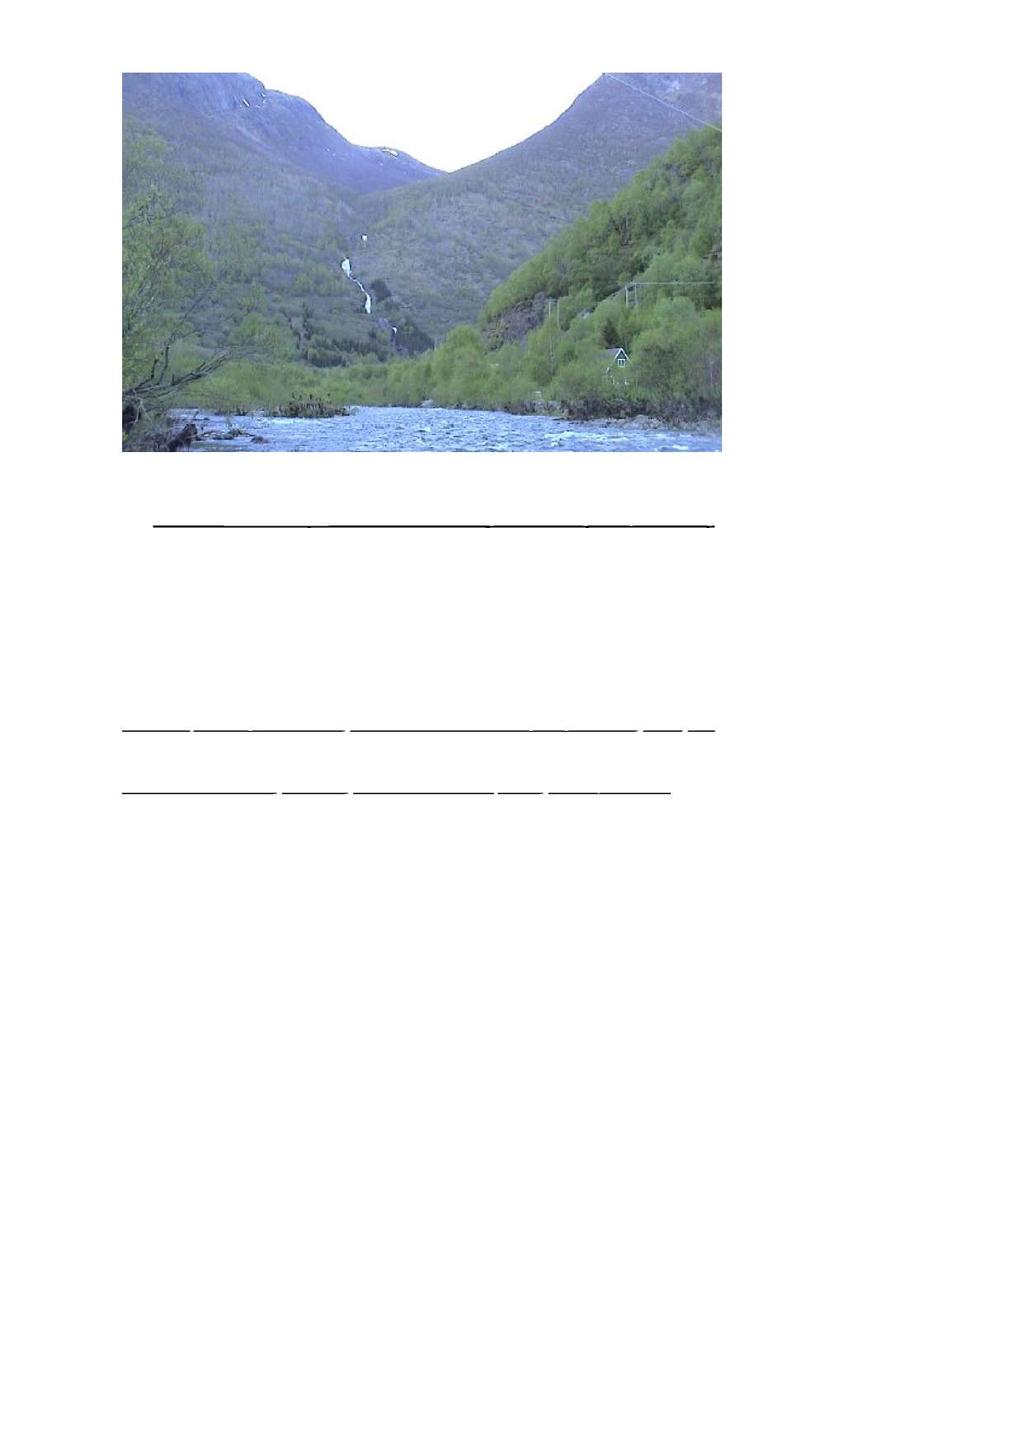 Side 5 av 8 Volldøla nedanfor planlagt inntak. Lærdal s elvi i framgrunnen. 2.